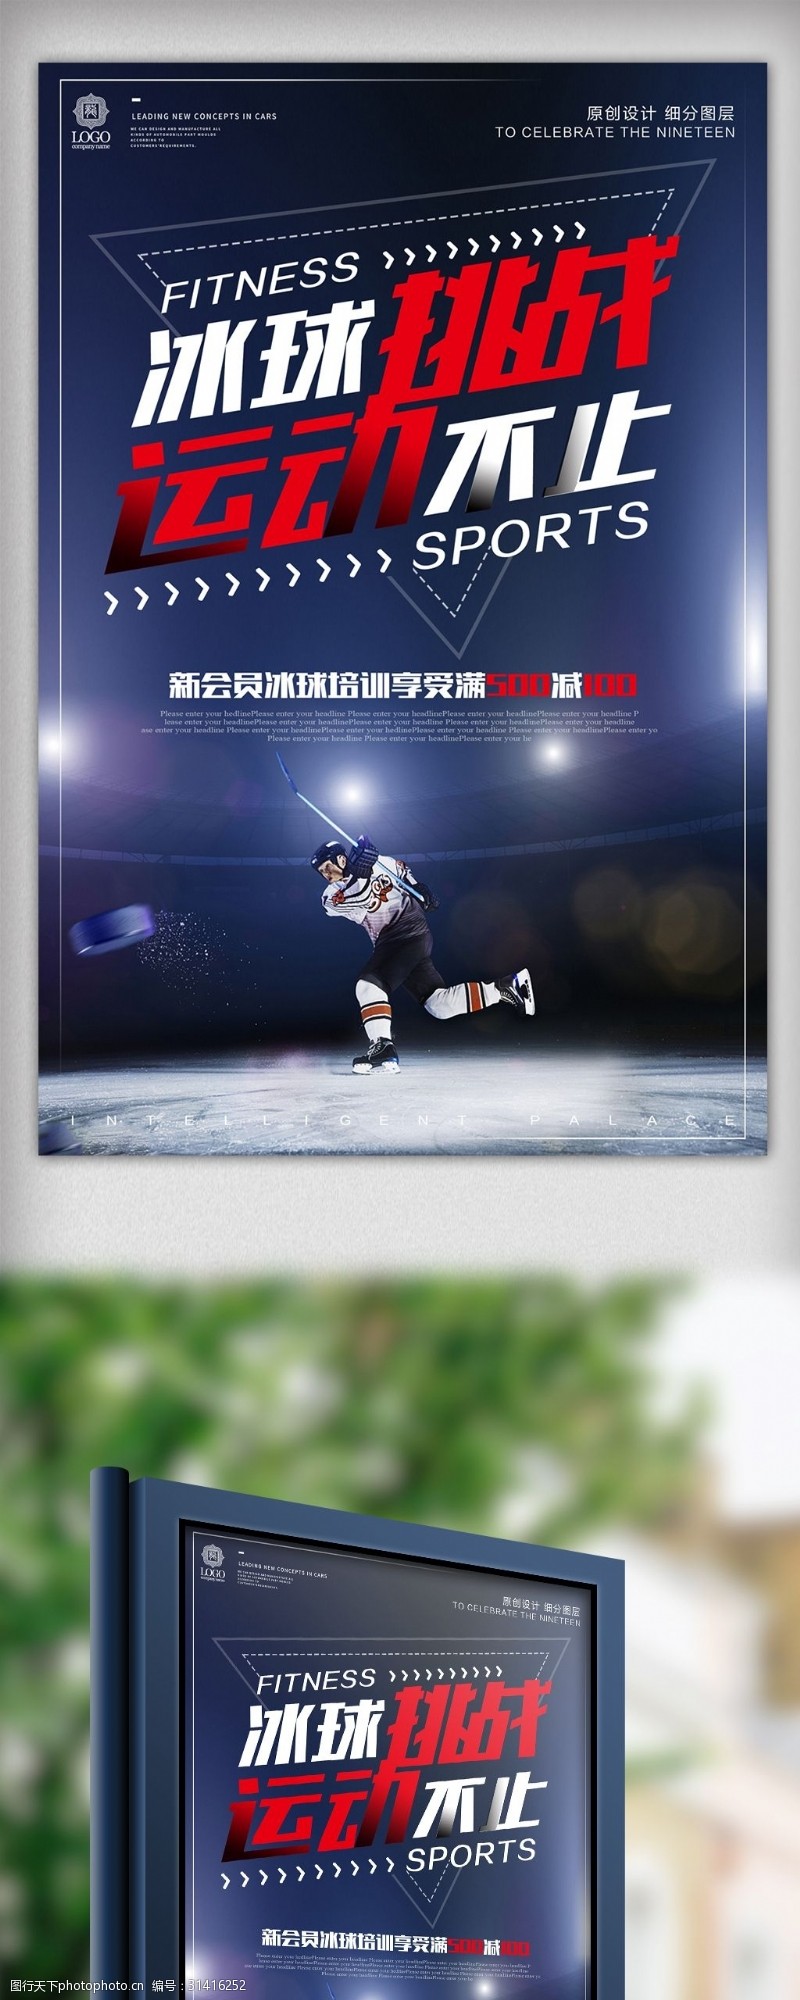 毽球酷炫时尚冰球运动宣传海报